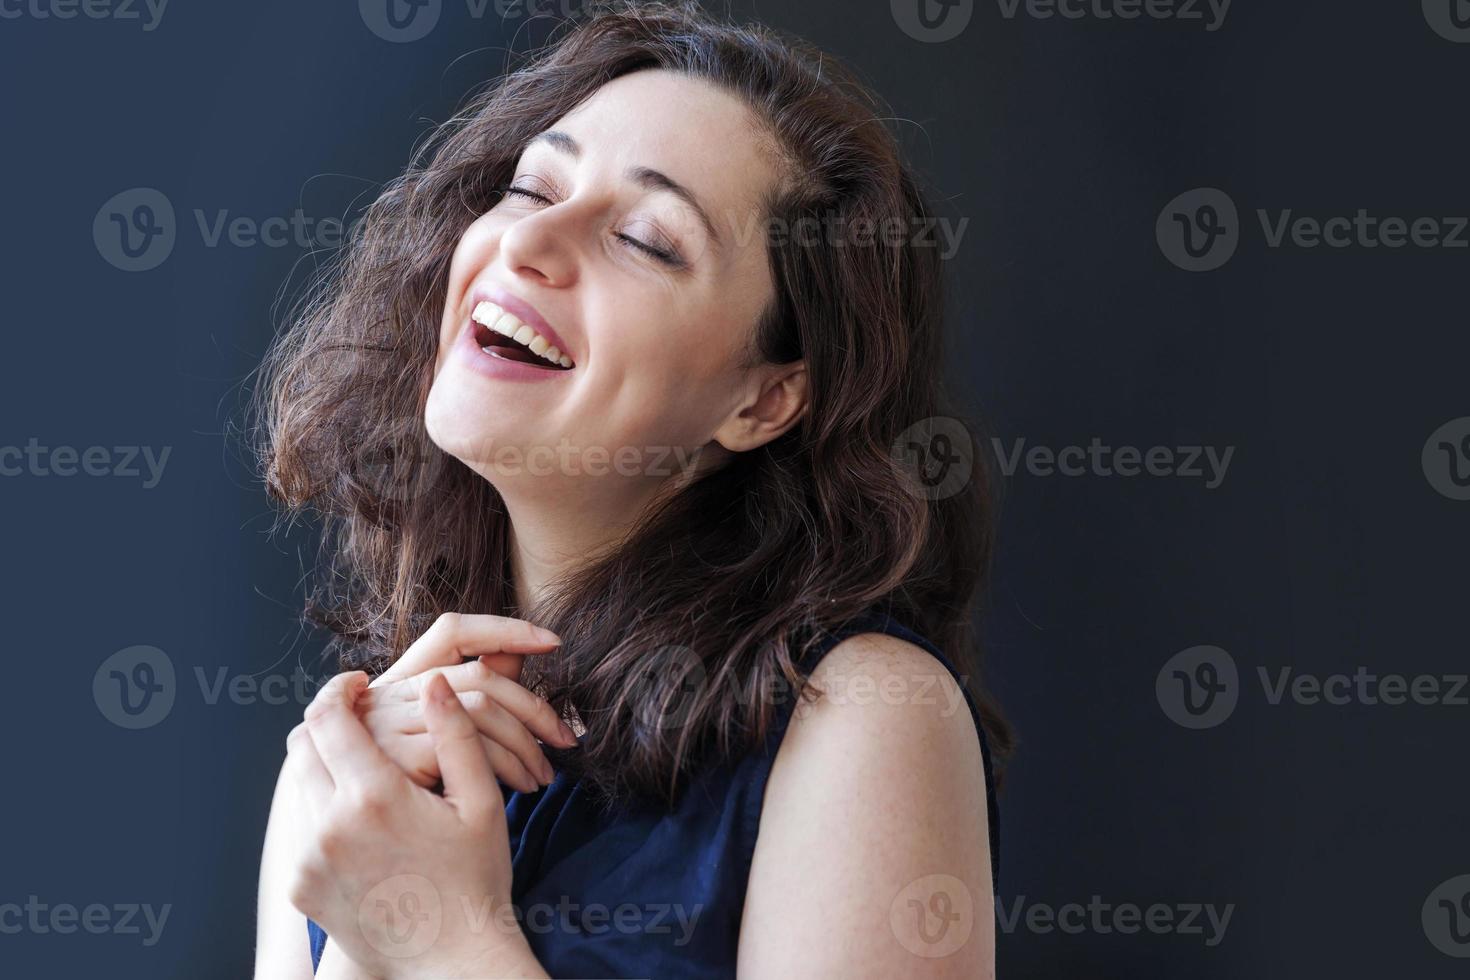 fille heureuse souriante. portrait de beauté jeune femme brune riante positive heureuse sur fond noir isolé. femme européenne. émotion humaine positive expression faciale langage corporel photo